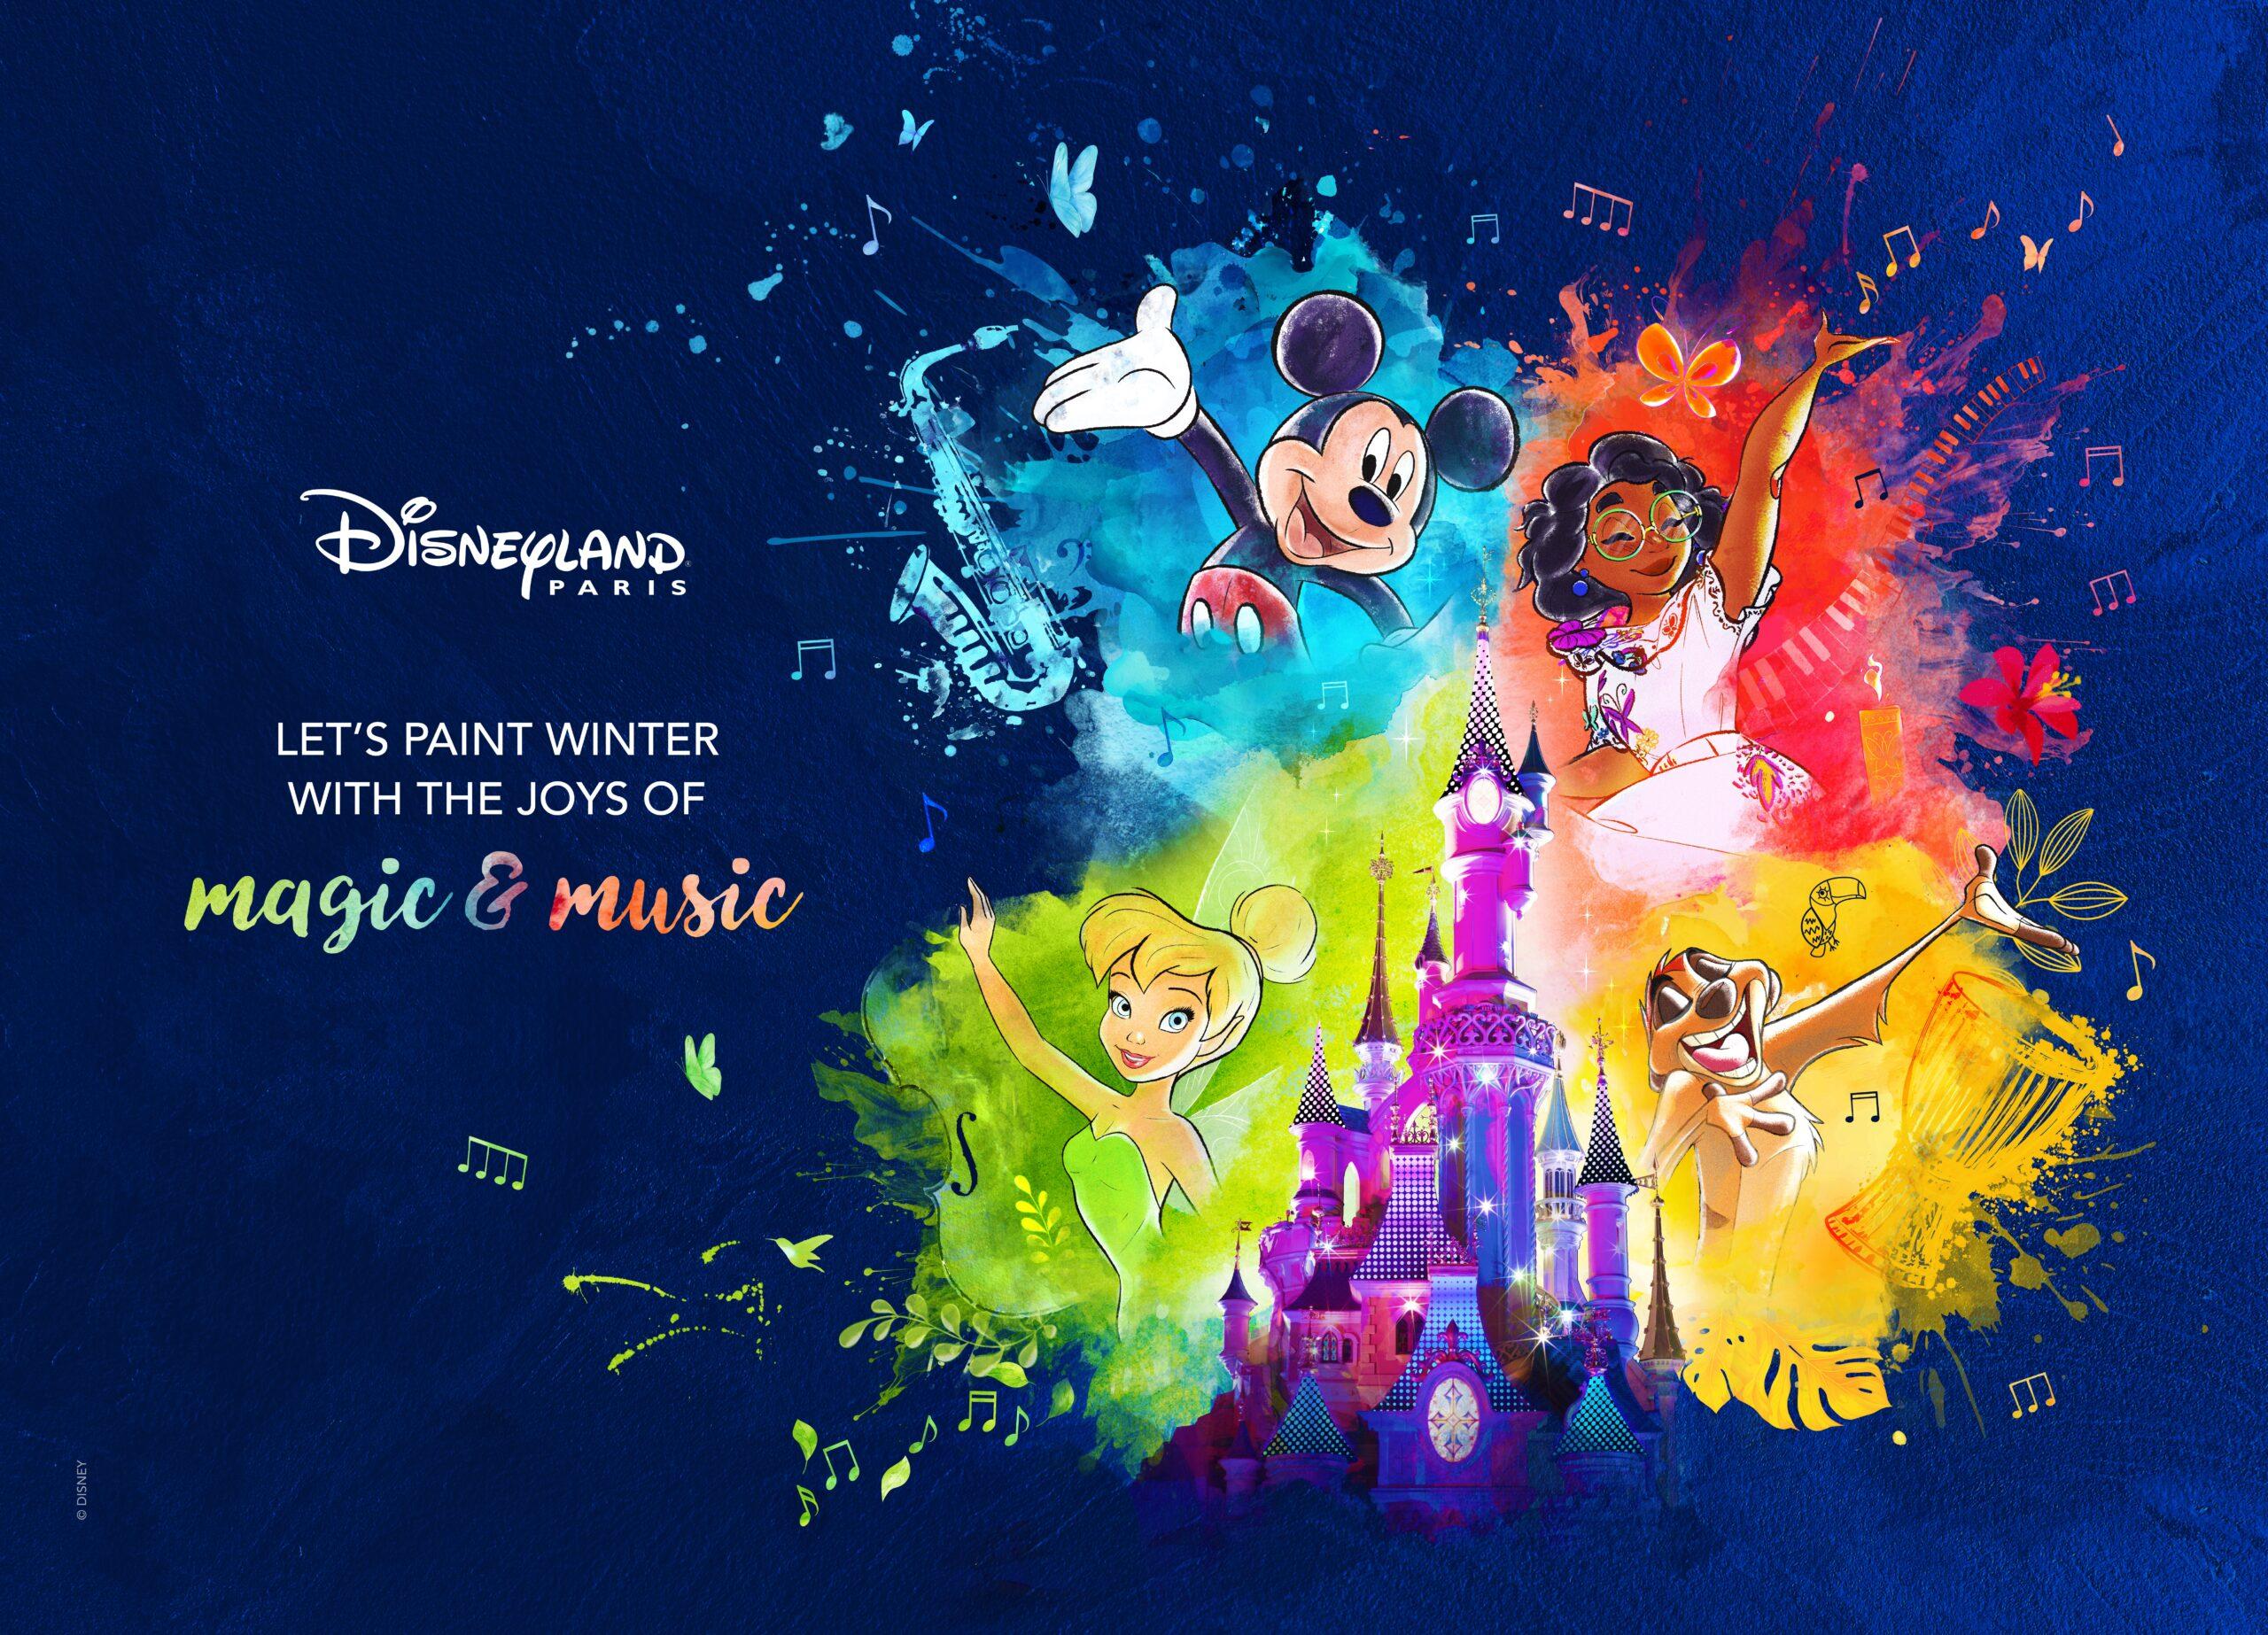 Château de Disneyland Paris entouré de Mickey, Mirabel, Timon et la Fée Clochette, avec le texte "Let's paint winter with the joys of magic & music"